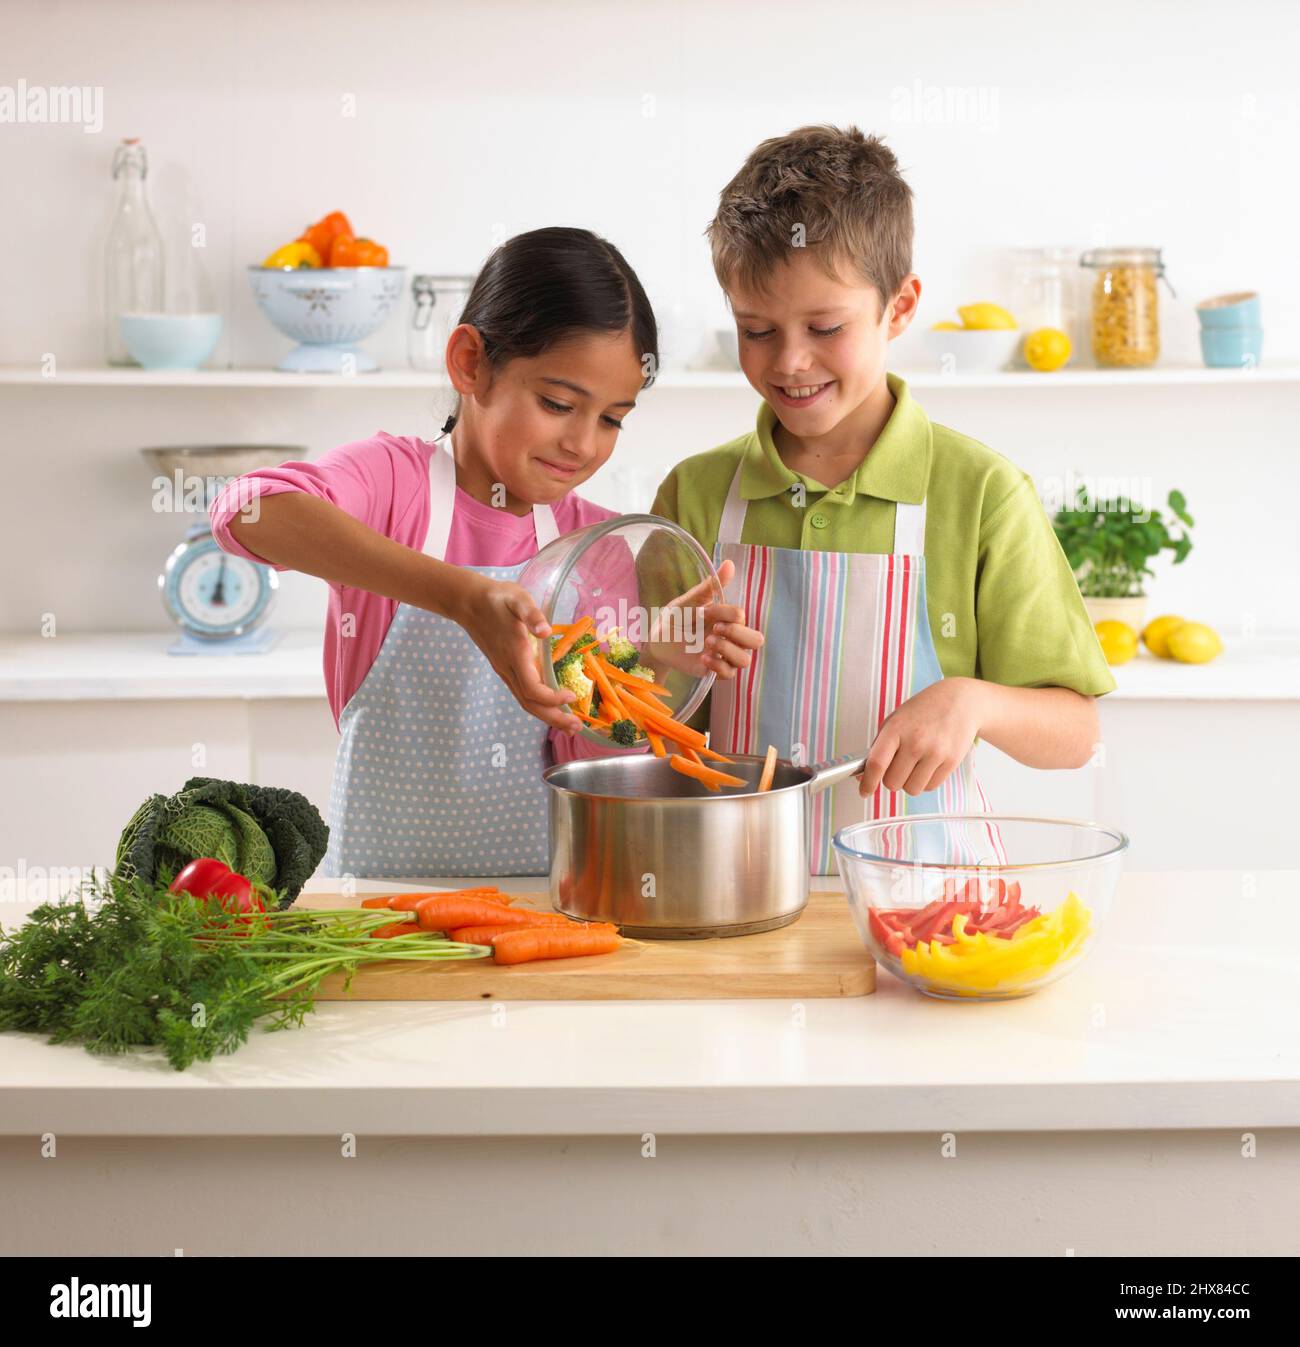 Sonriente niño y niña preparando comida en la cocina Fotografía de stock -  Alamy